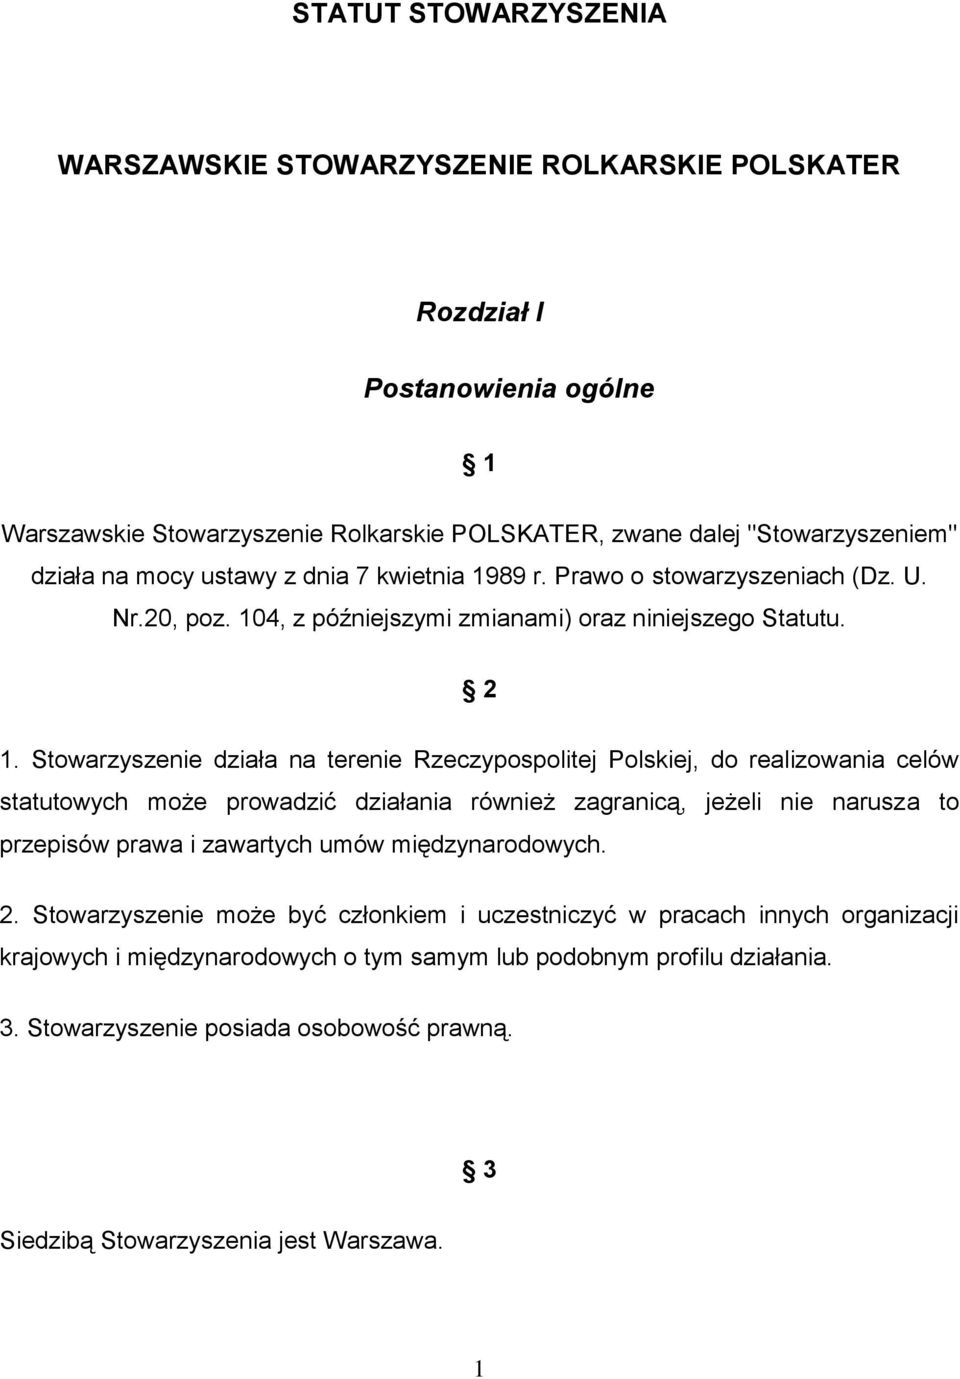 Stowarzyszenie działa na terenie Rzeczypospolitej Polskiej, do realizowania celów statutowych może prowadzić działania również zagranicą, jeżeli nie narusza to przepisów prawa i zawartych umów